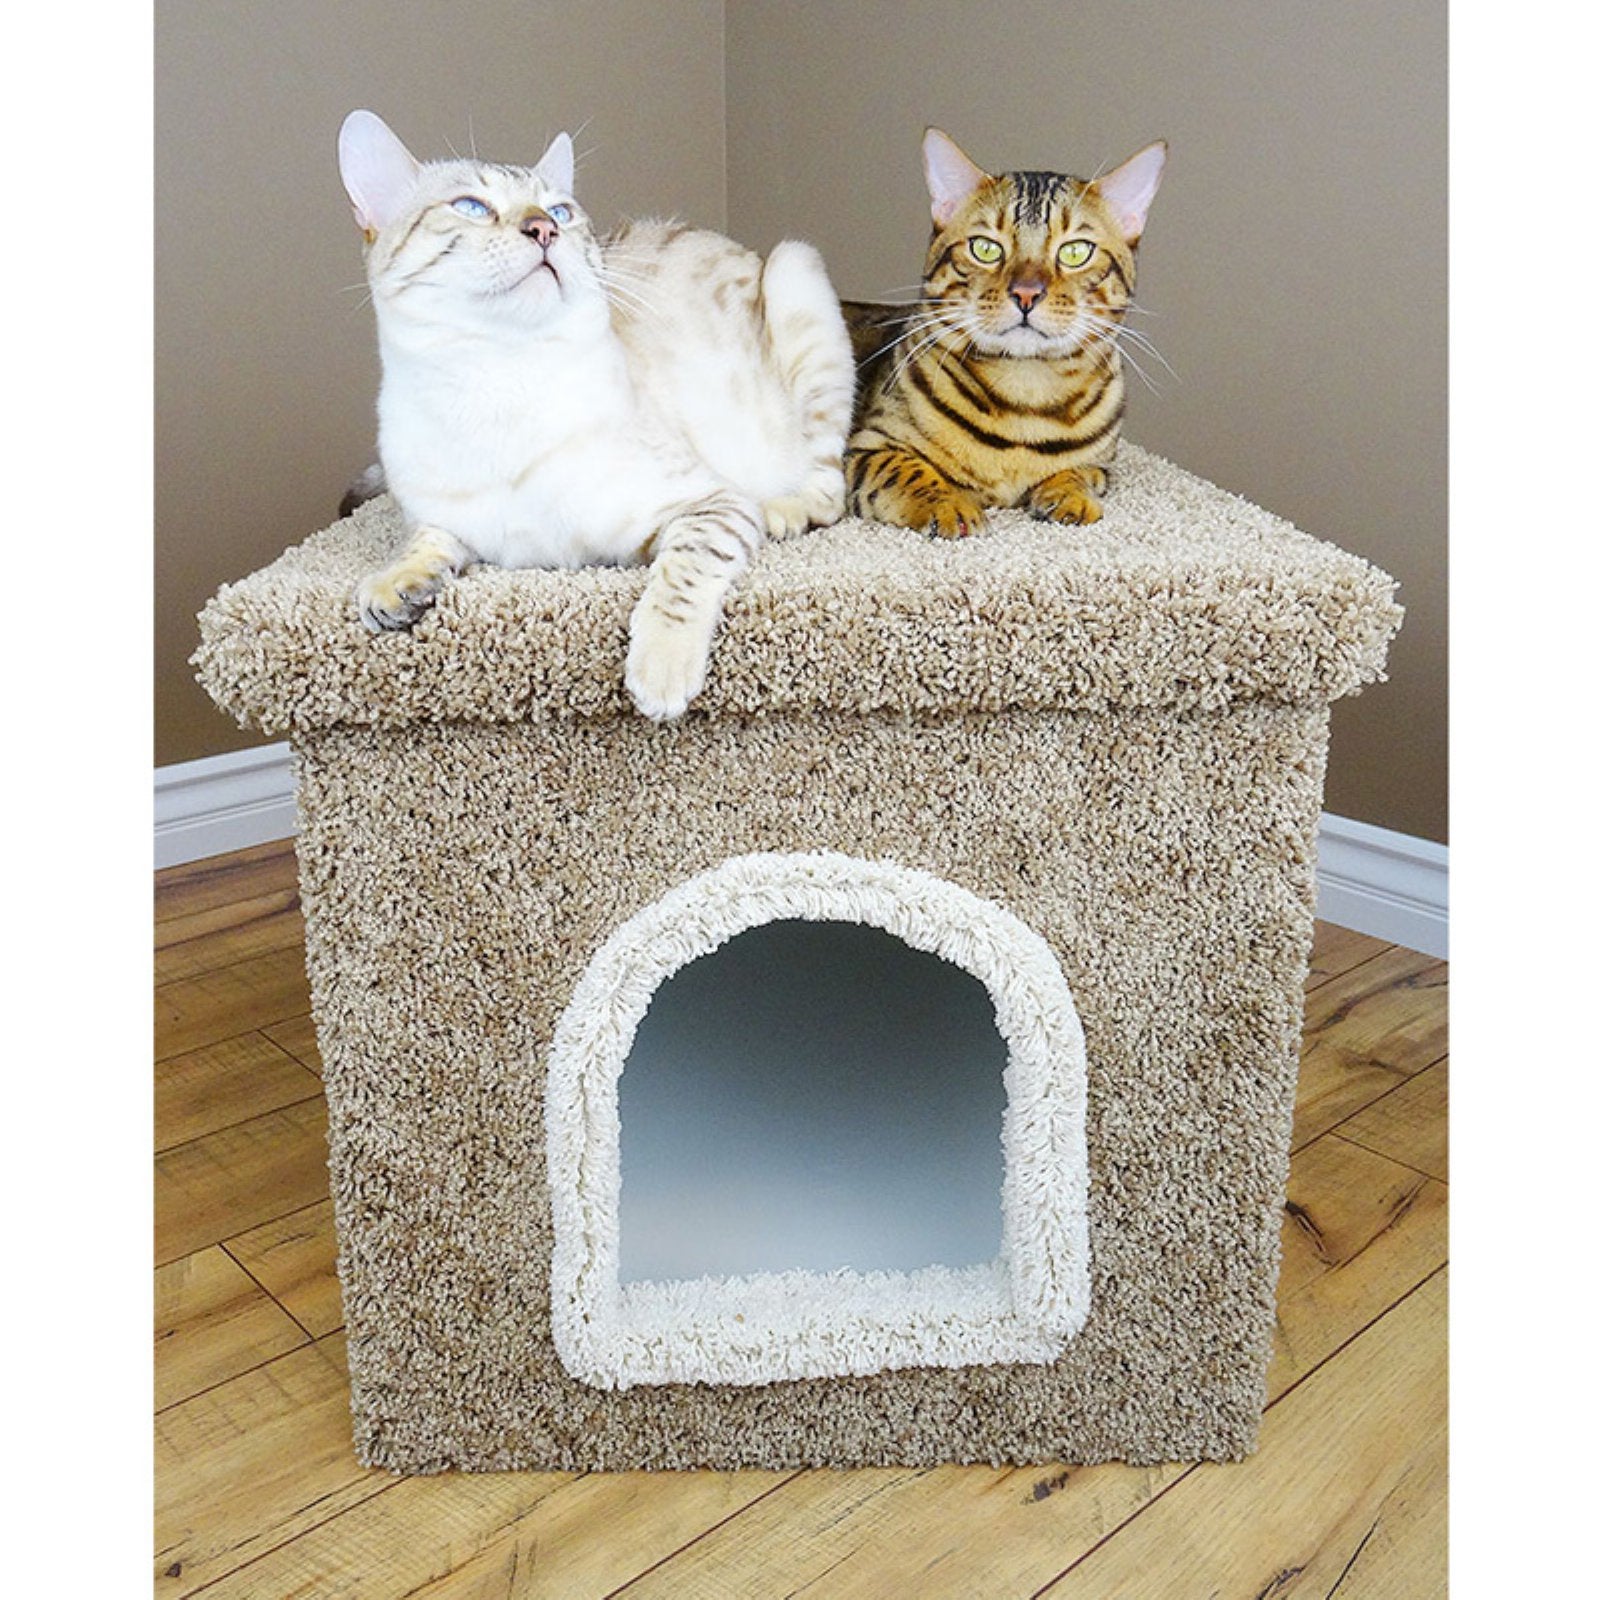 New Cat Condos Premier Litter Box Enclosure